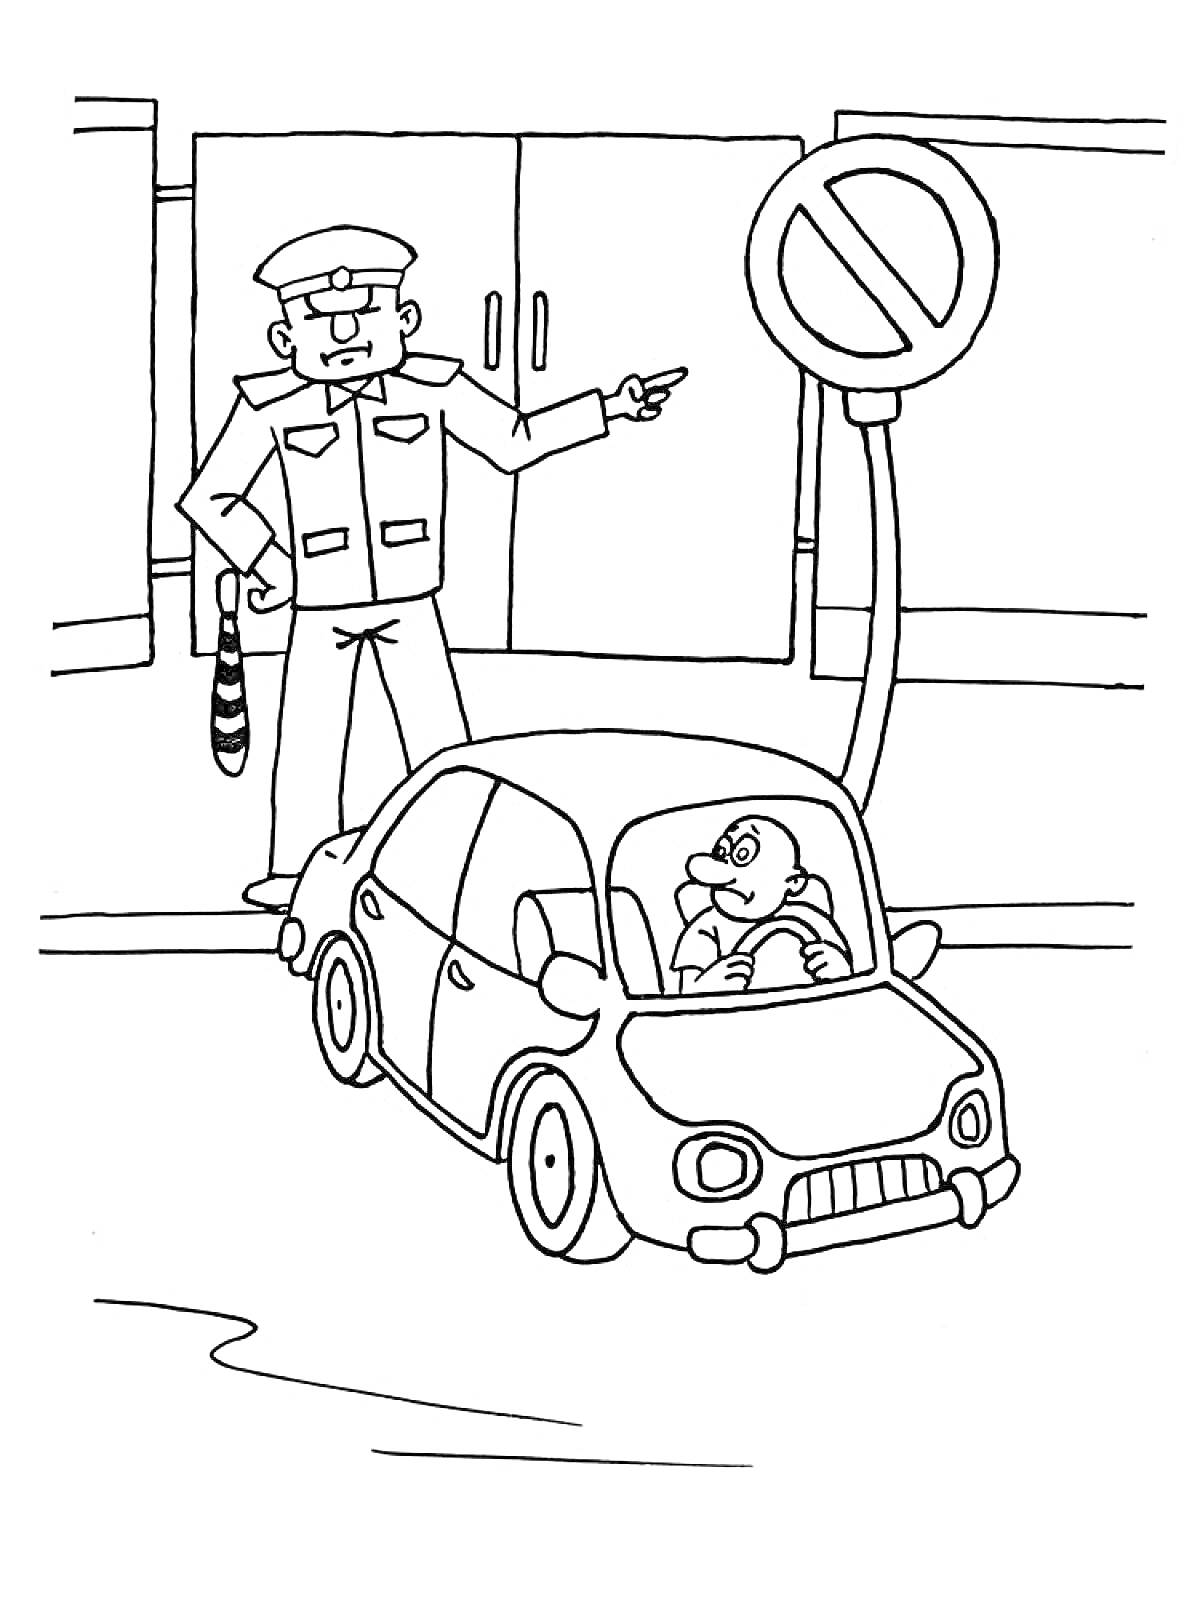 Раскраска Полицейский останавливает водителя автомобиля рядом со знаком 